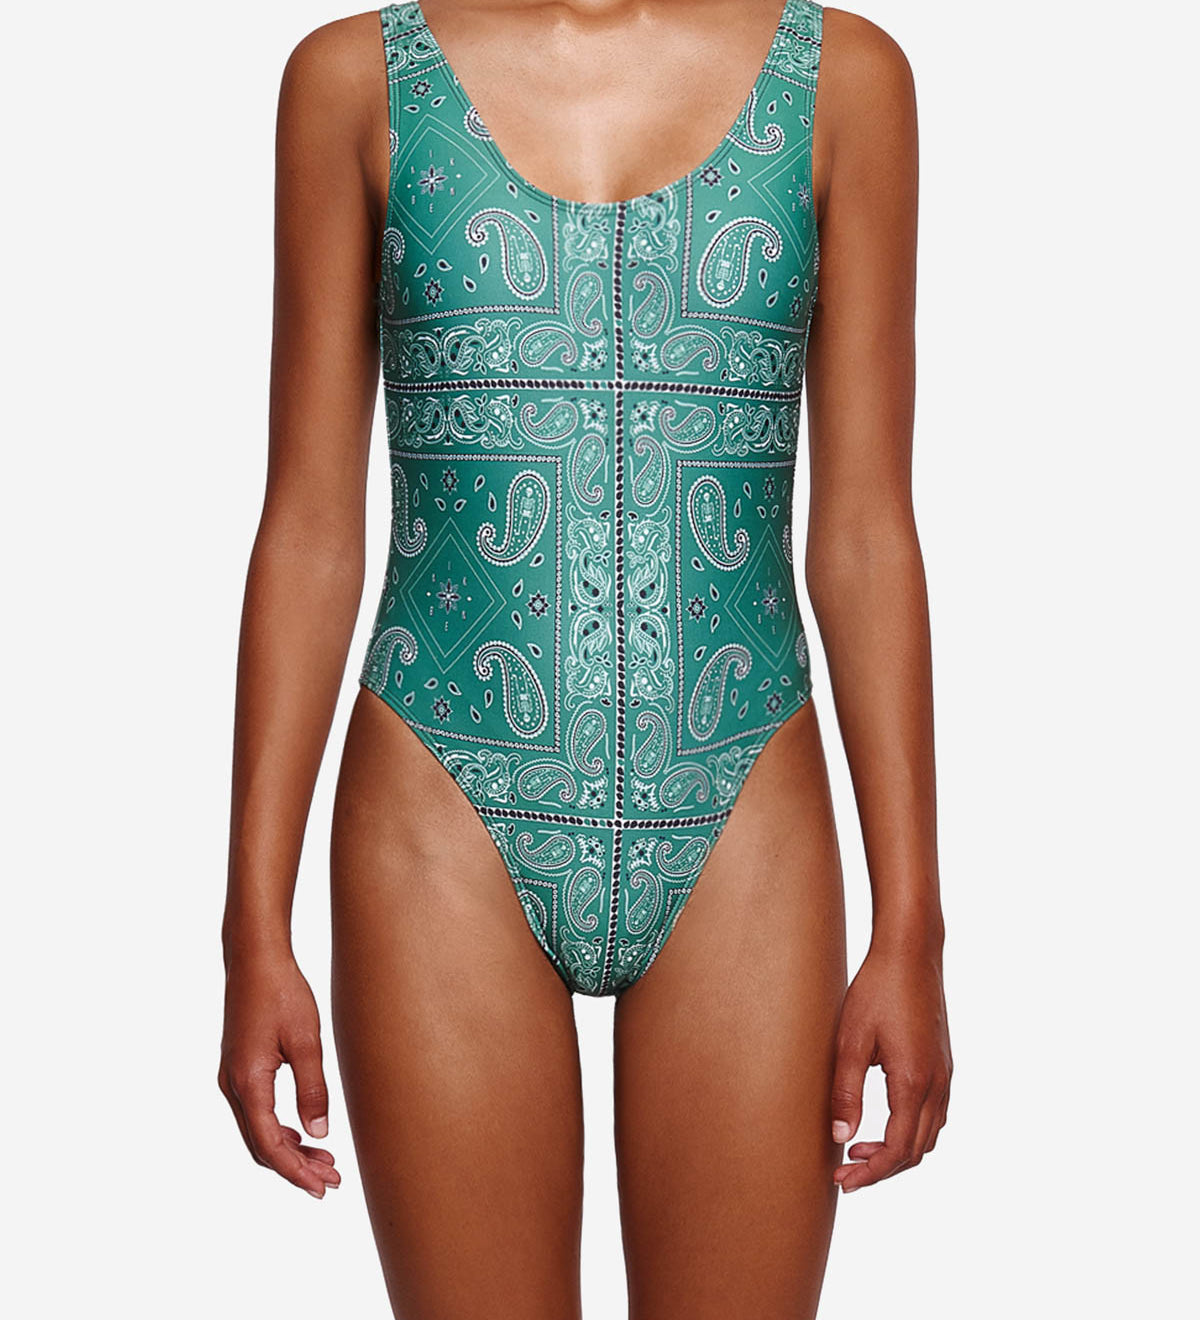 Model wearing green patterned swimsuit